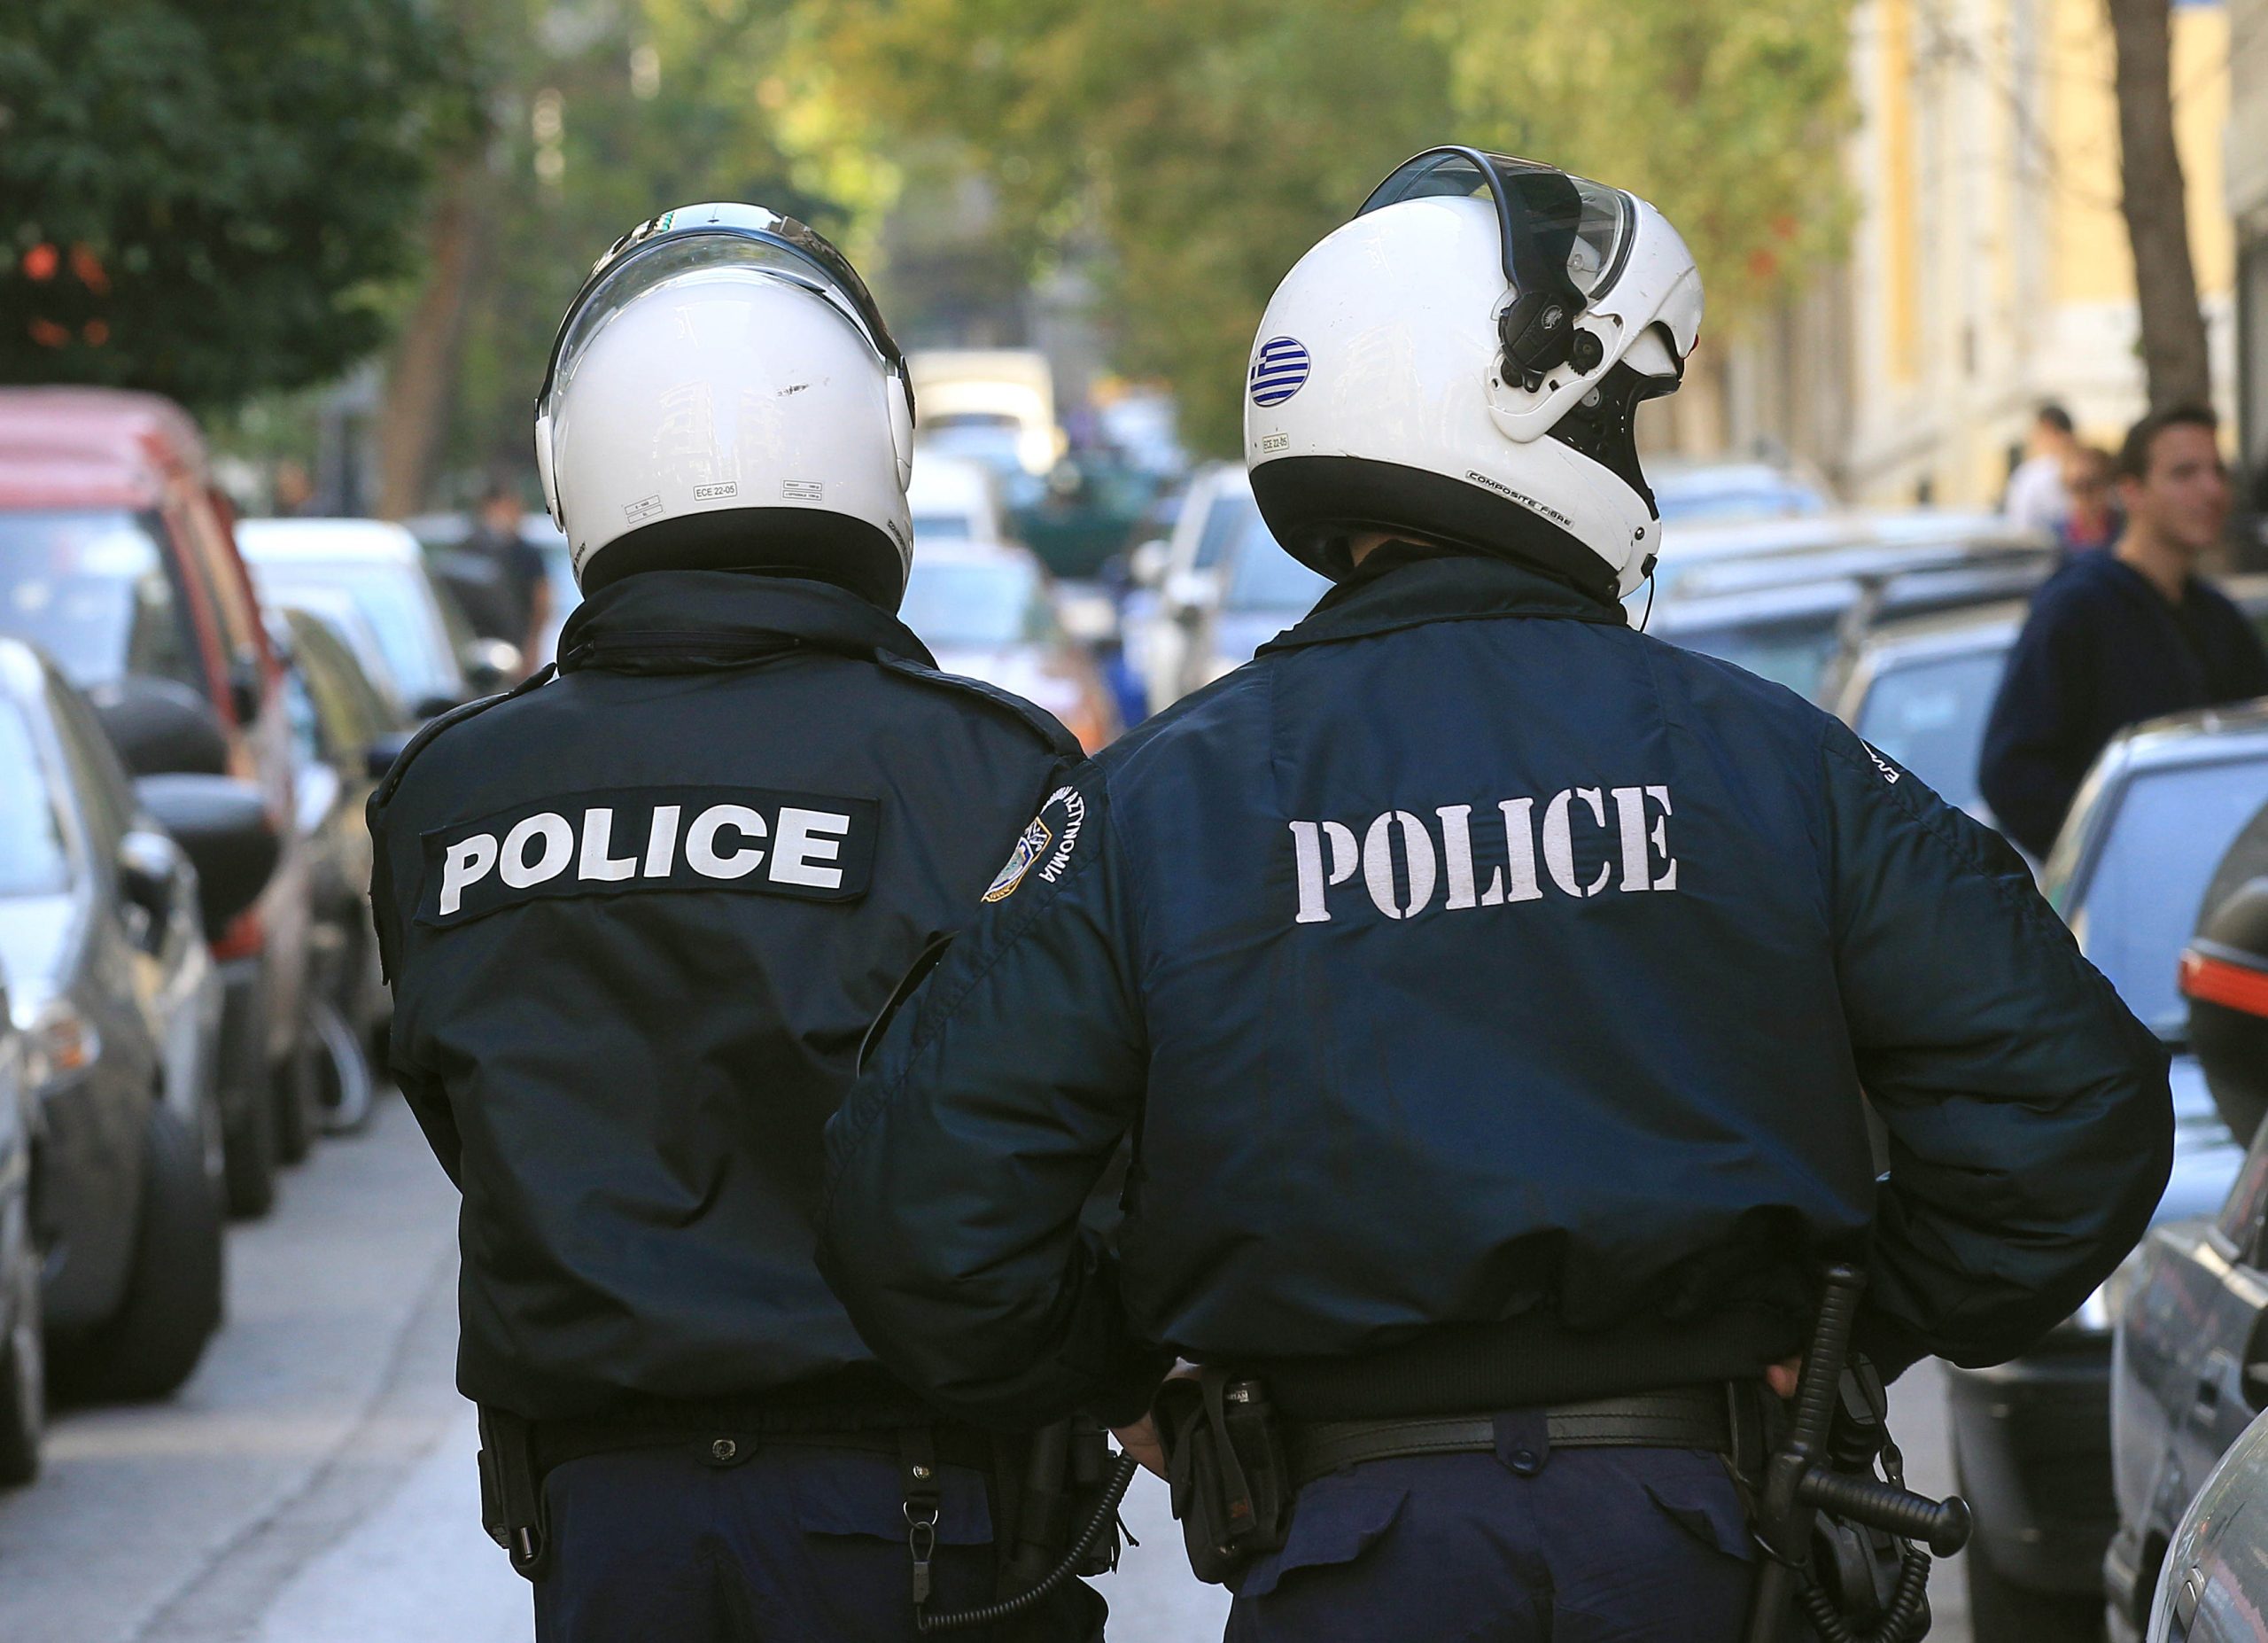 H κυβέρνηση φοβάται την οργή του κόσμου στις παρελάσεις: Σε «συναγερμό» 1.600 αστυνομικοί στην Αθήνα